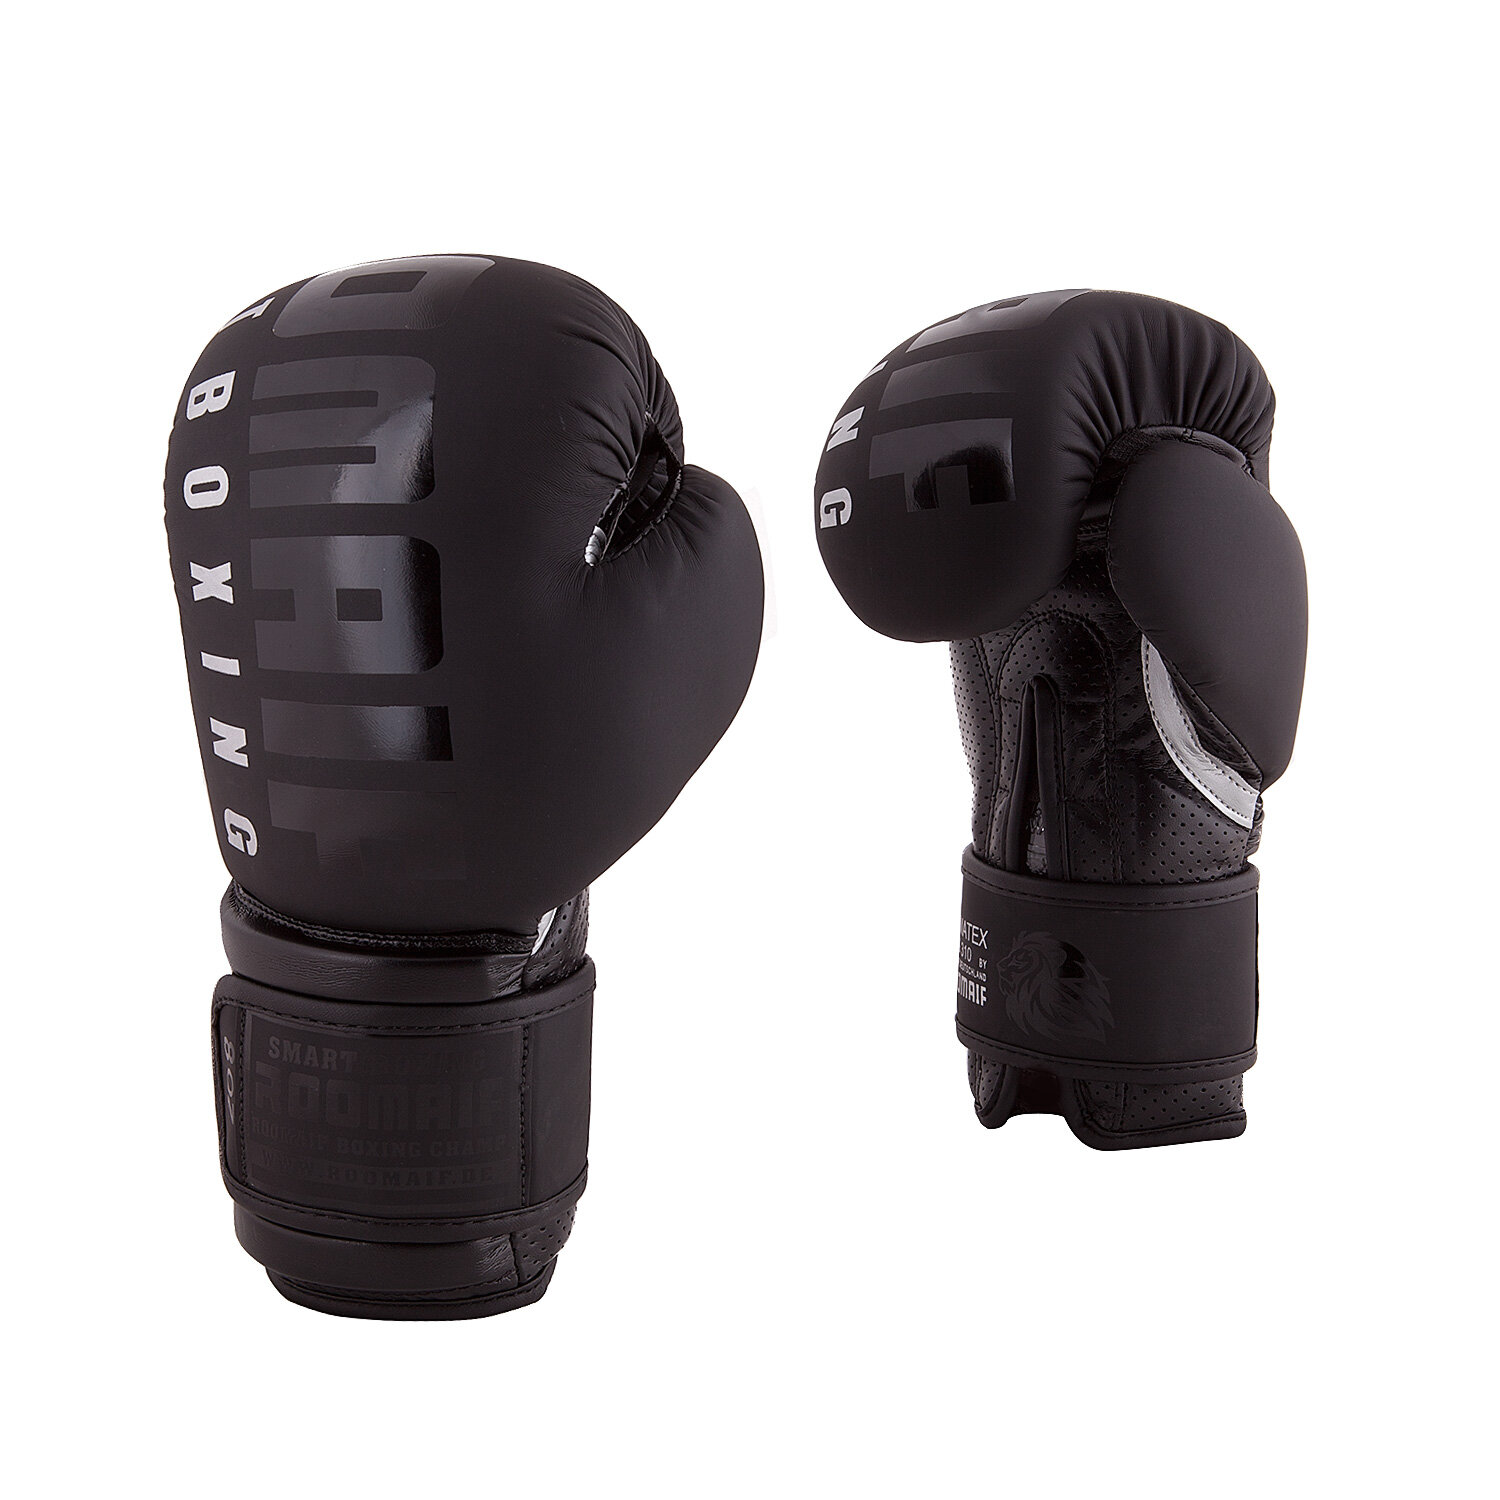 Боксерские перчатки Roomaif Rbg-310 Dx Black размер 08 oz